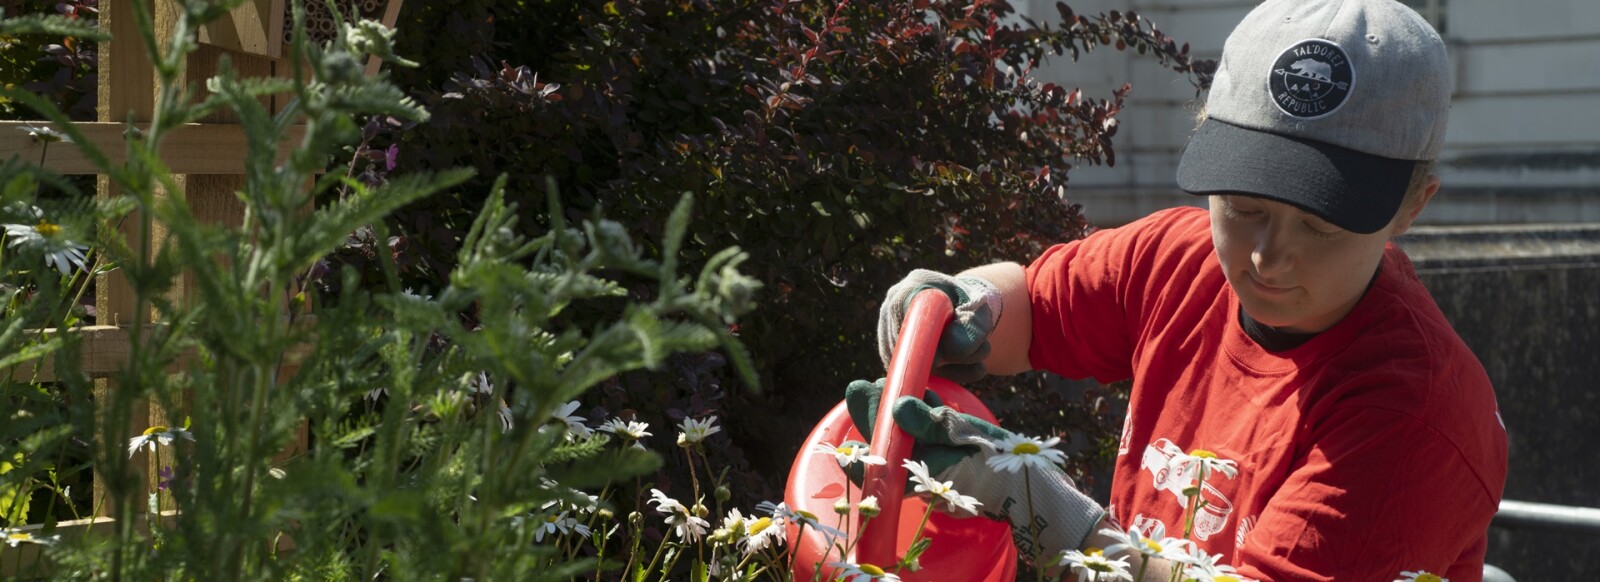 Volunteer wearing red volunteering shirt, watering plants at National Museum Cardiff urban meadow.